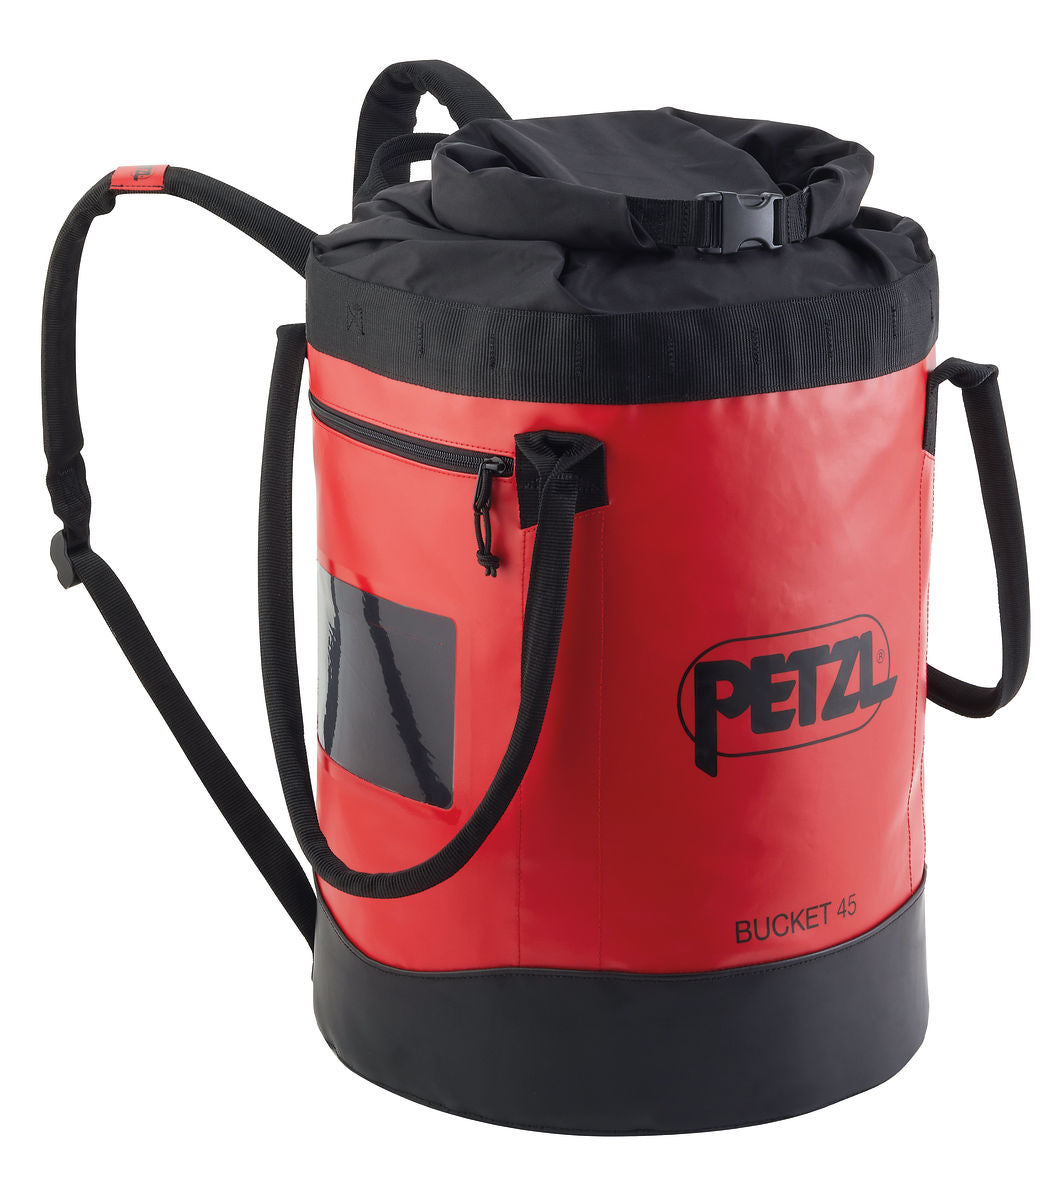 Petzl DUFFEL 65 – East Coast Rescue Solutions